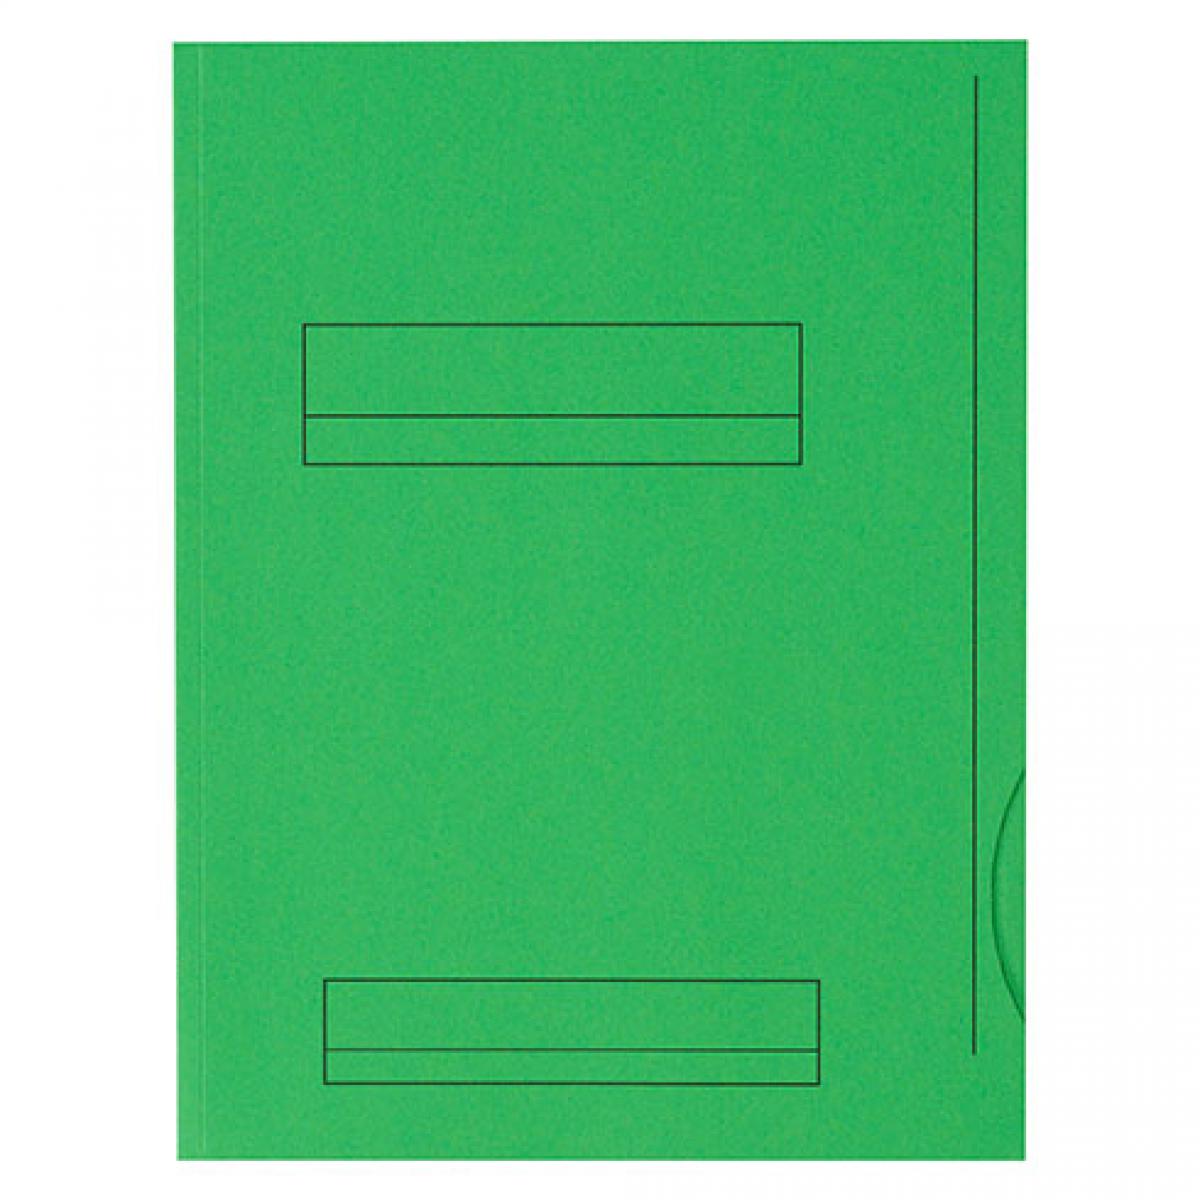 Fast - Chemises dossier 2 rabats Fast 24 x 32 cm vert vif - Paquet de 50 - Accessoires Bureau